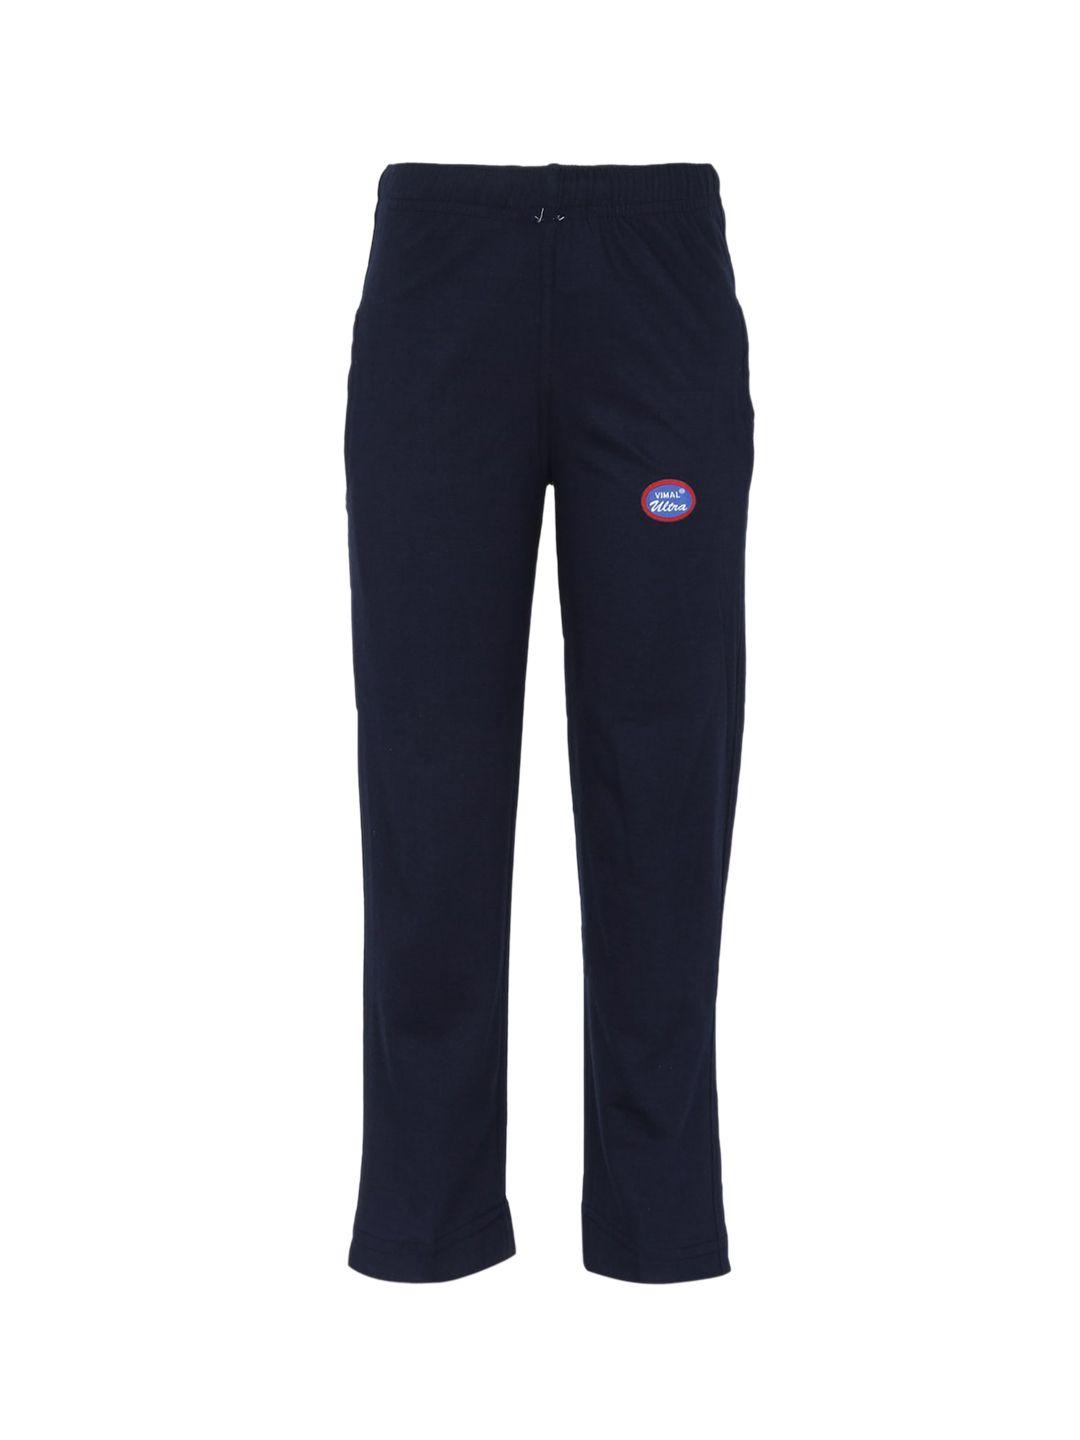 vimal-jonney-kids-navy-blue-solid-cotton-track-pants